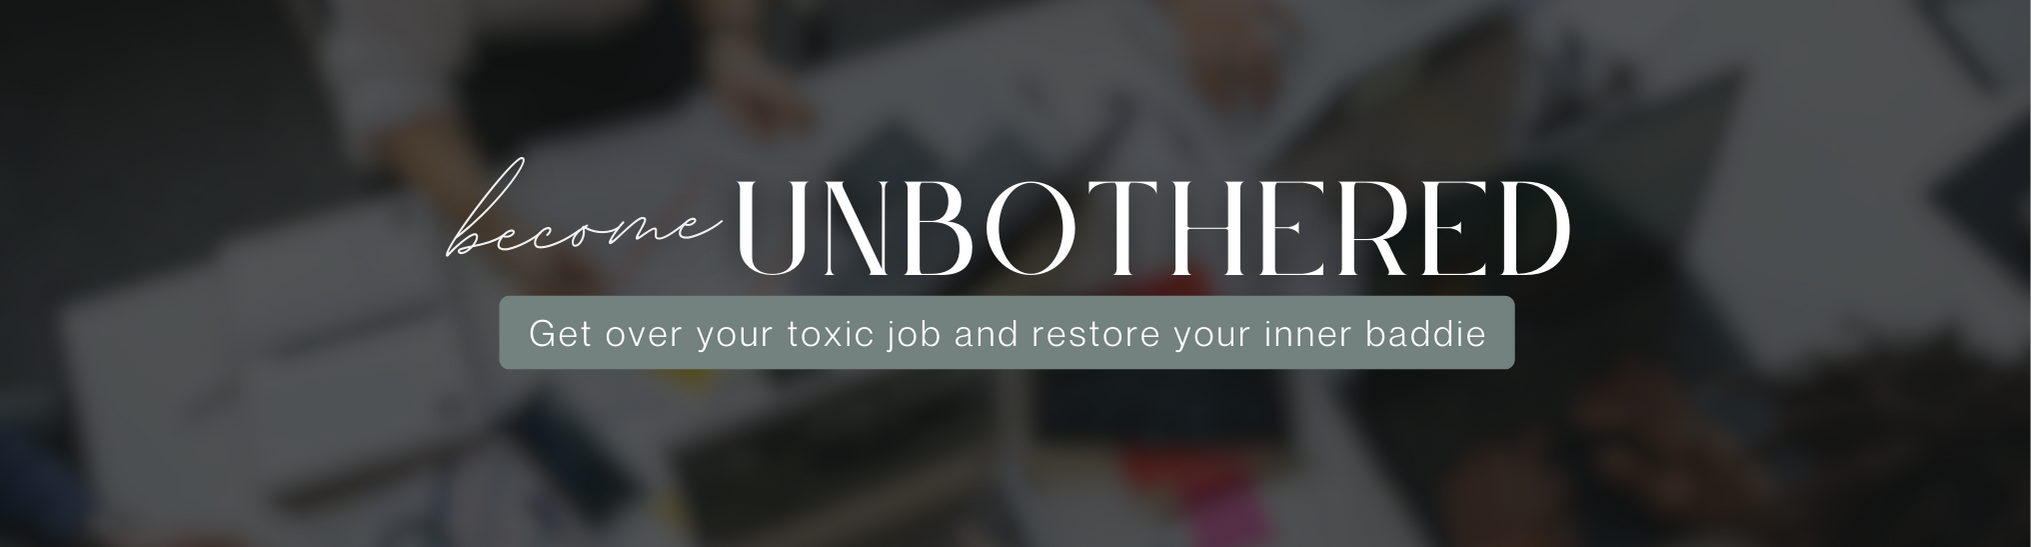 WTF Just Happened | Unpack your toxic job  escape the toxic job loop